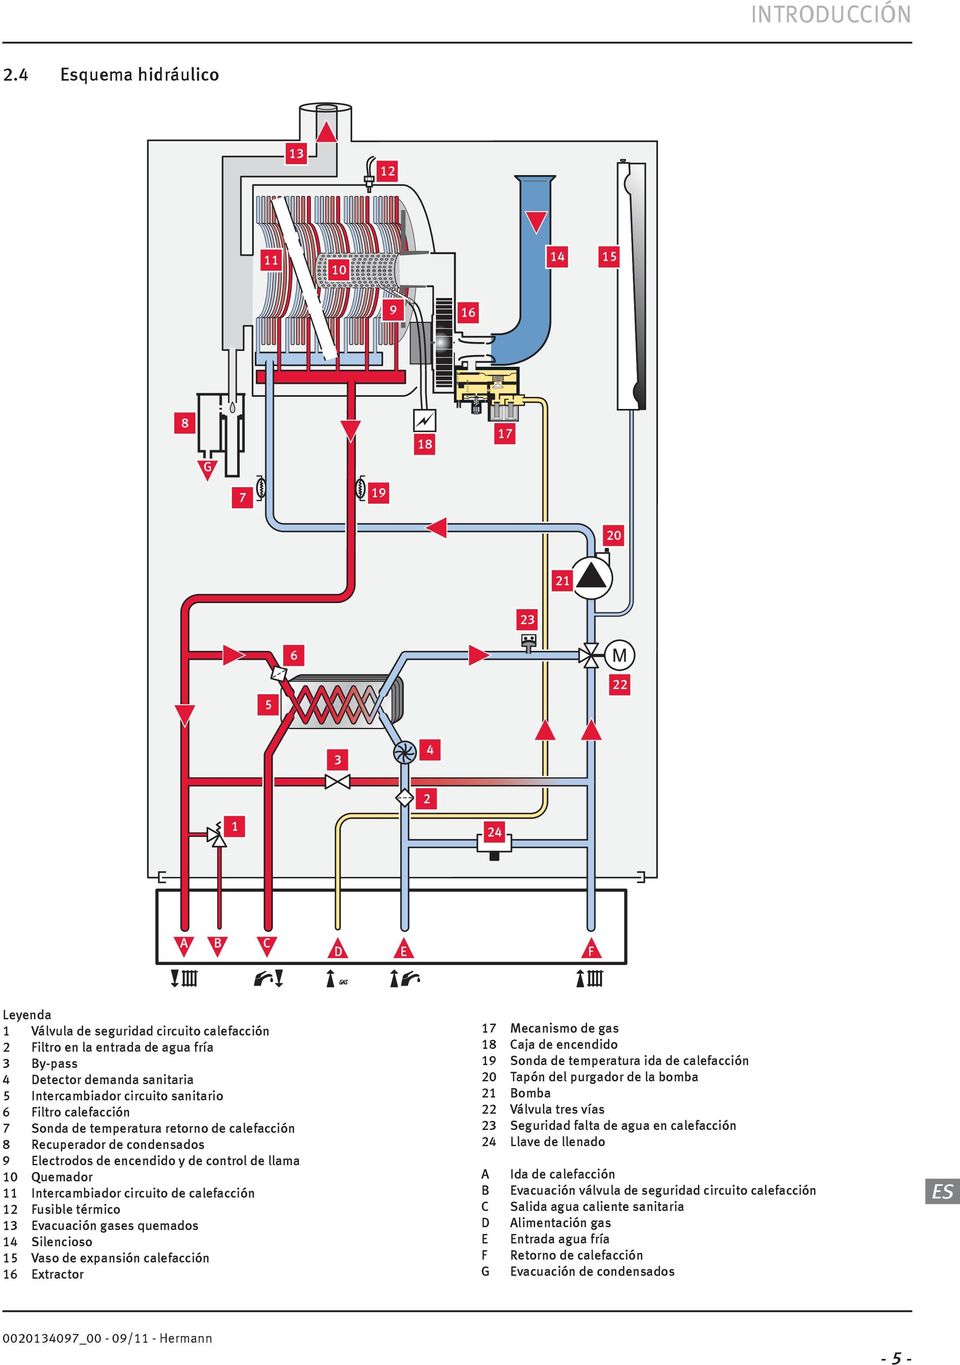 Intercambiador circuito sanitario 6 Filtro calefacción 7 Sonda de temperatura retorno de calefacción 8 Recuperador de condensados 9 Electrodos de encendido y de control de llama 0 Quemador